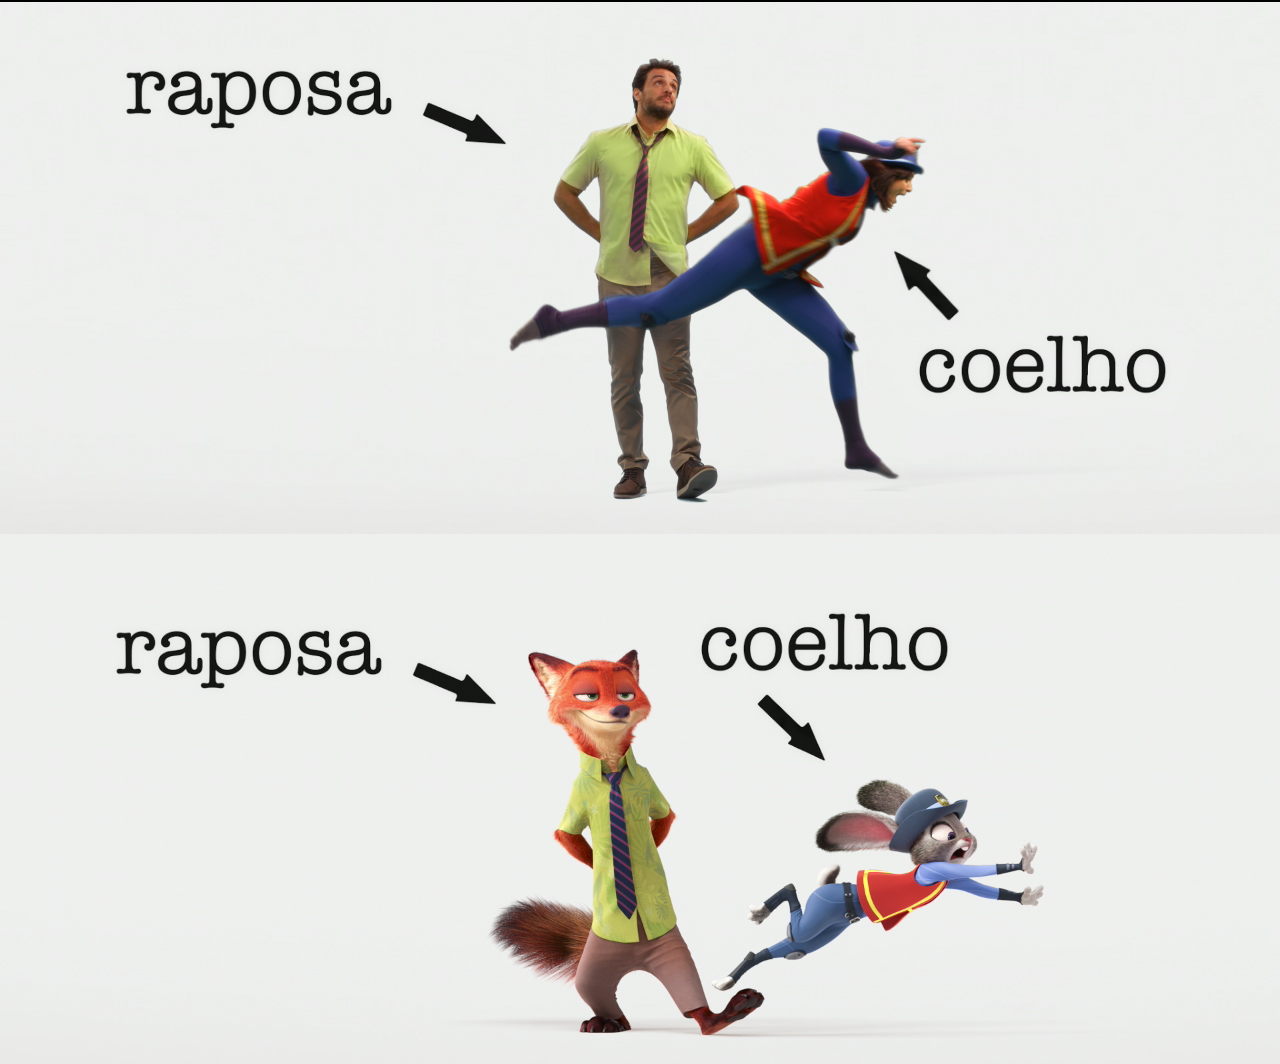 Zootopia  Conheça os personagens da animação